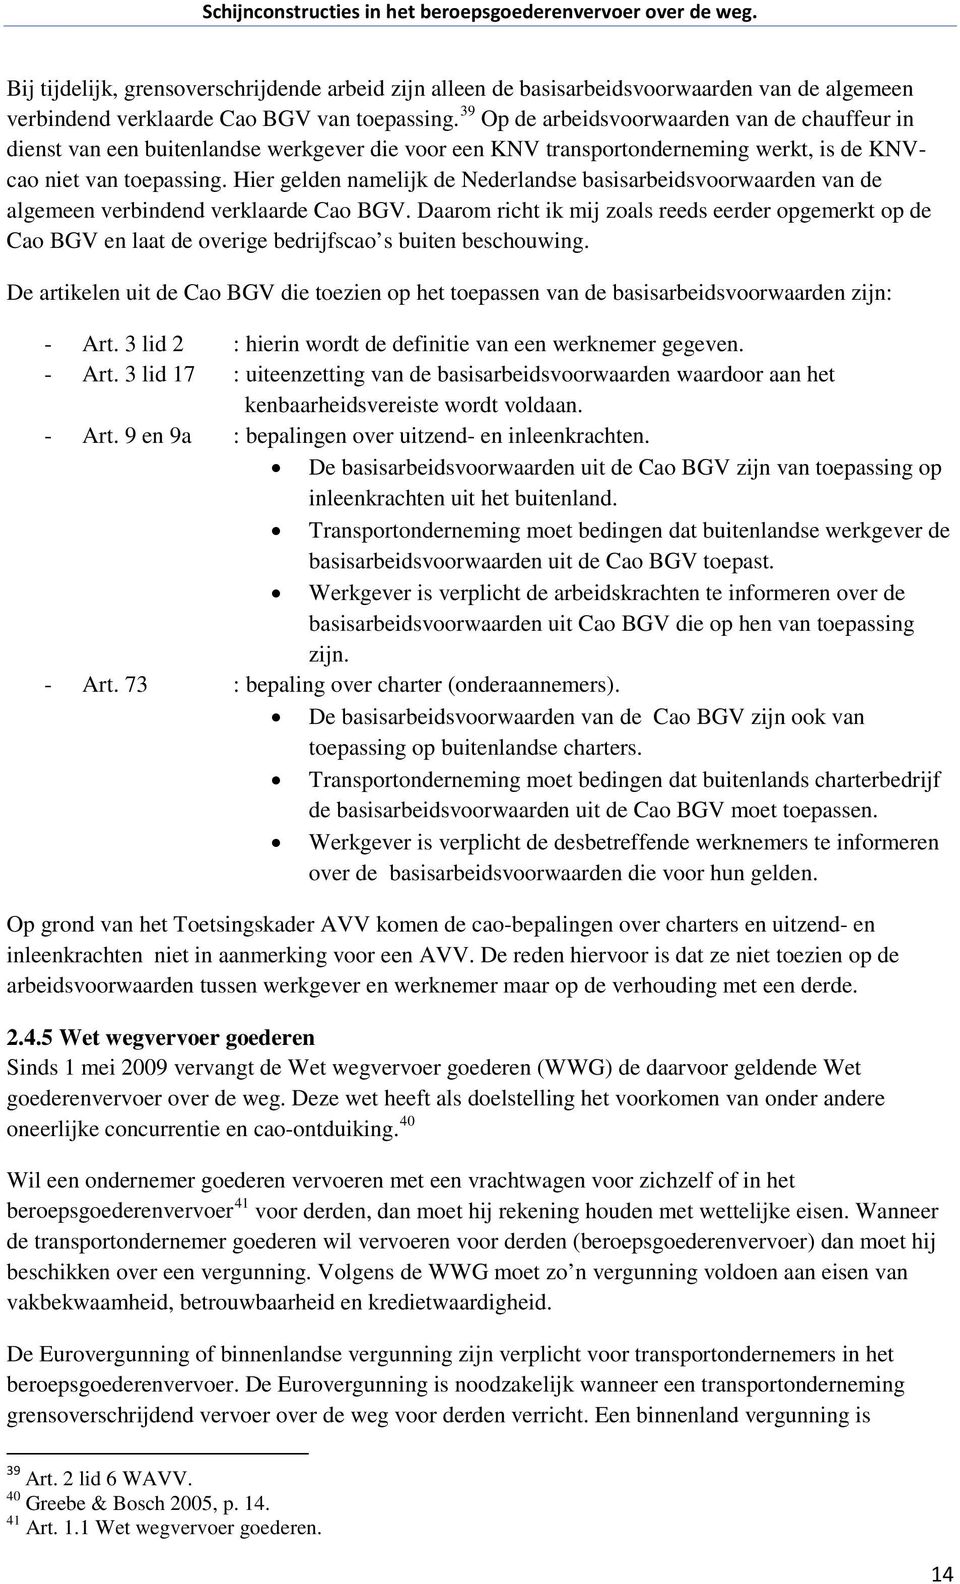 Hier gelden namelijk de Nederlandse basisarbeidsvoorwaarden van de algemeen verbindend verklaarde Cao BGV.